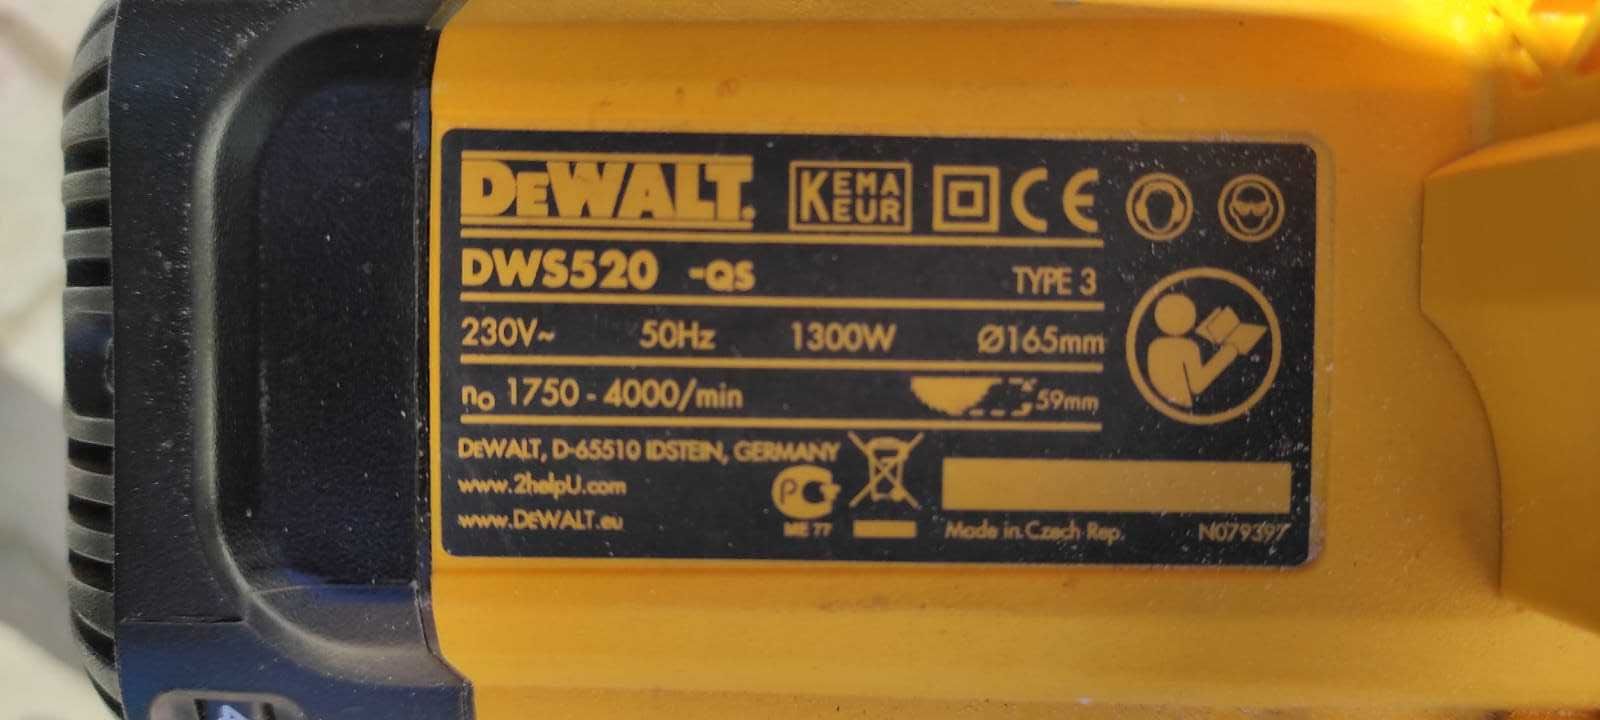 De Walt DWS520 Piła tarczowa zagłębiarka, prowadnica.